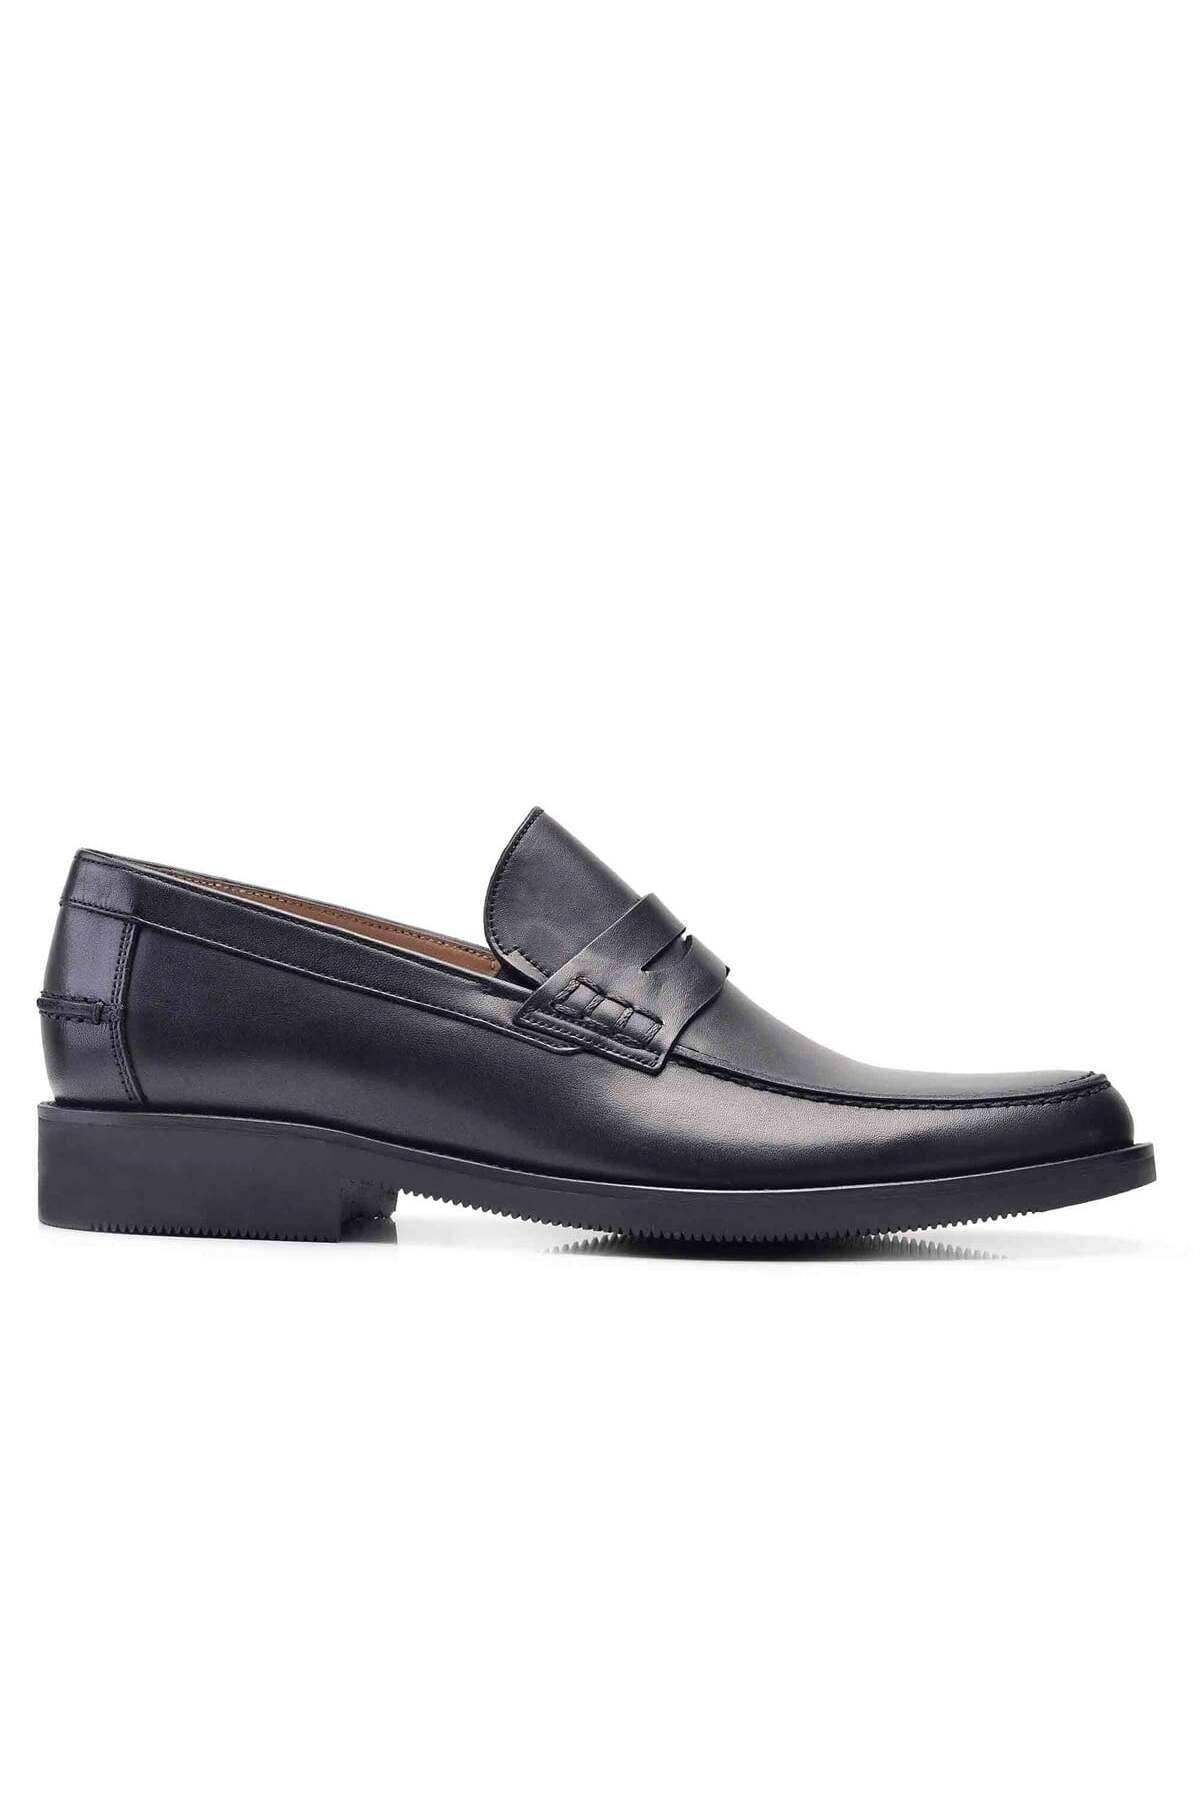 Nevzat Onay Siyah Klasik Loafer Erkek Ayakkabı -11912-